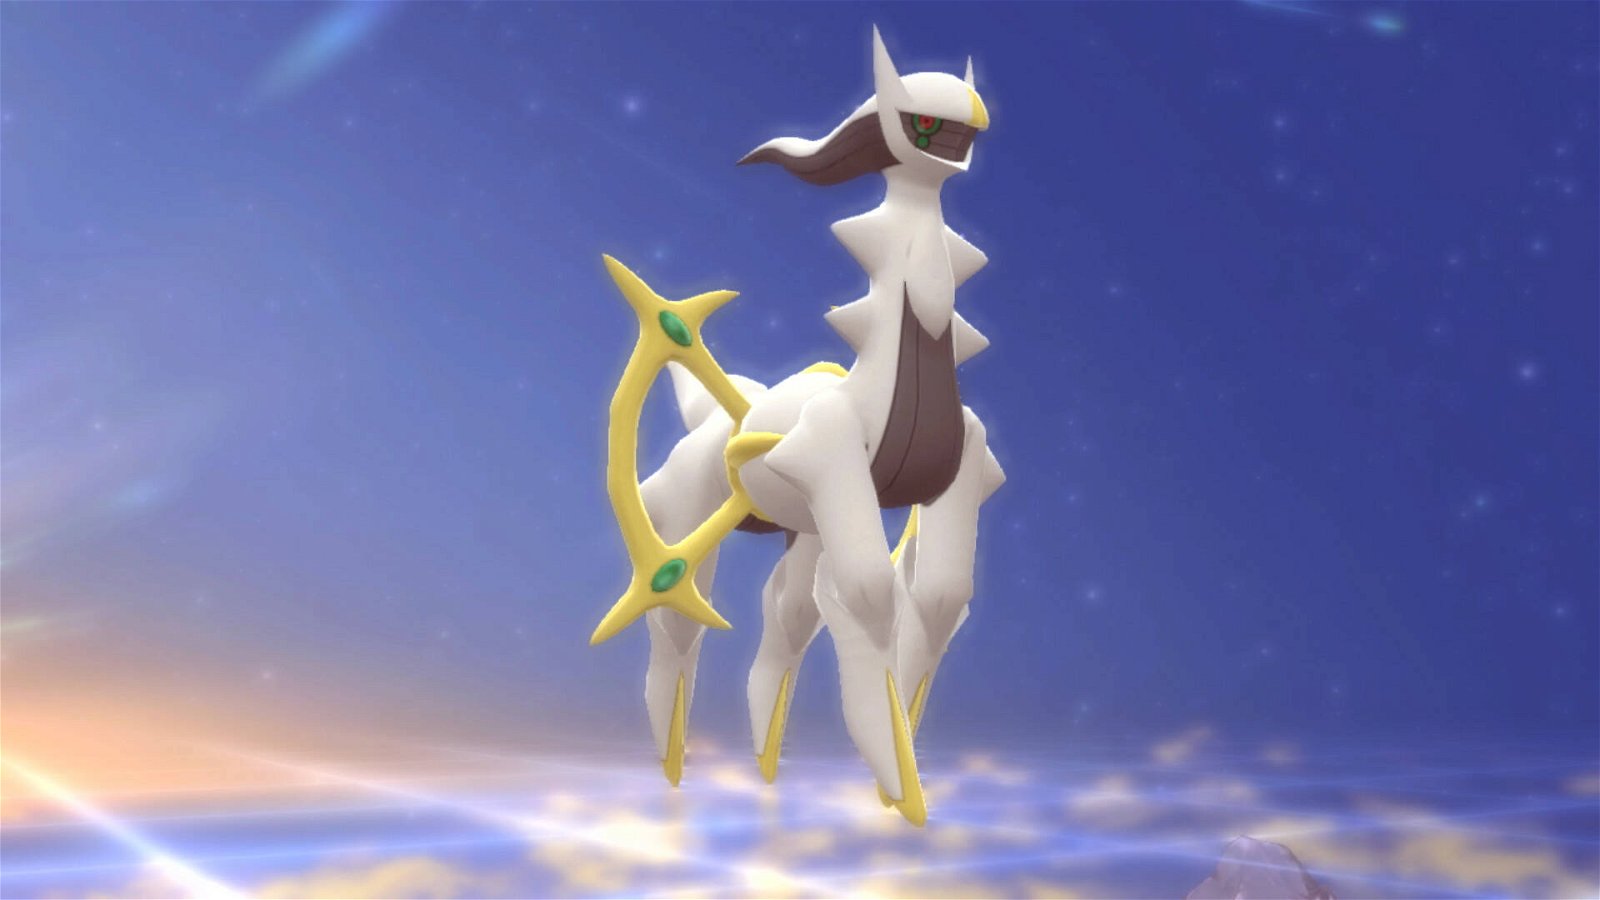 Arceus arriva in Pokémon Diamante e Perla: ecco come catturarlo